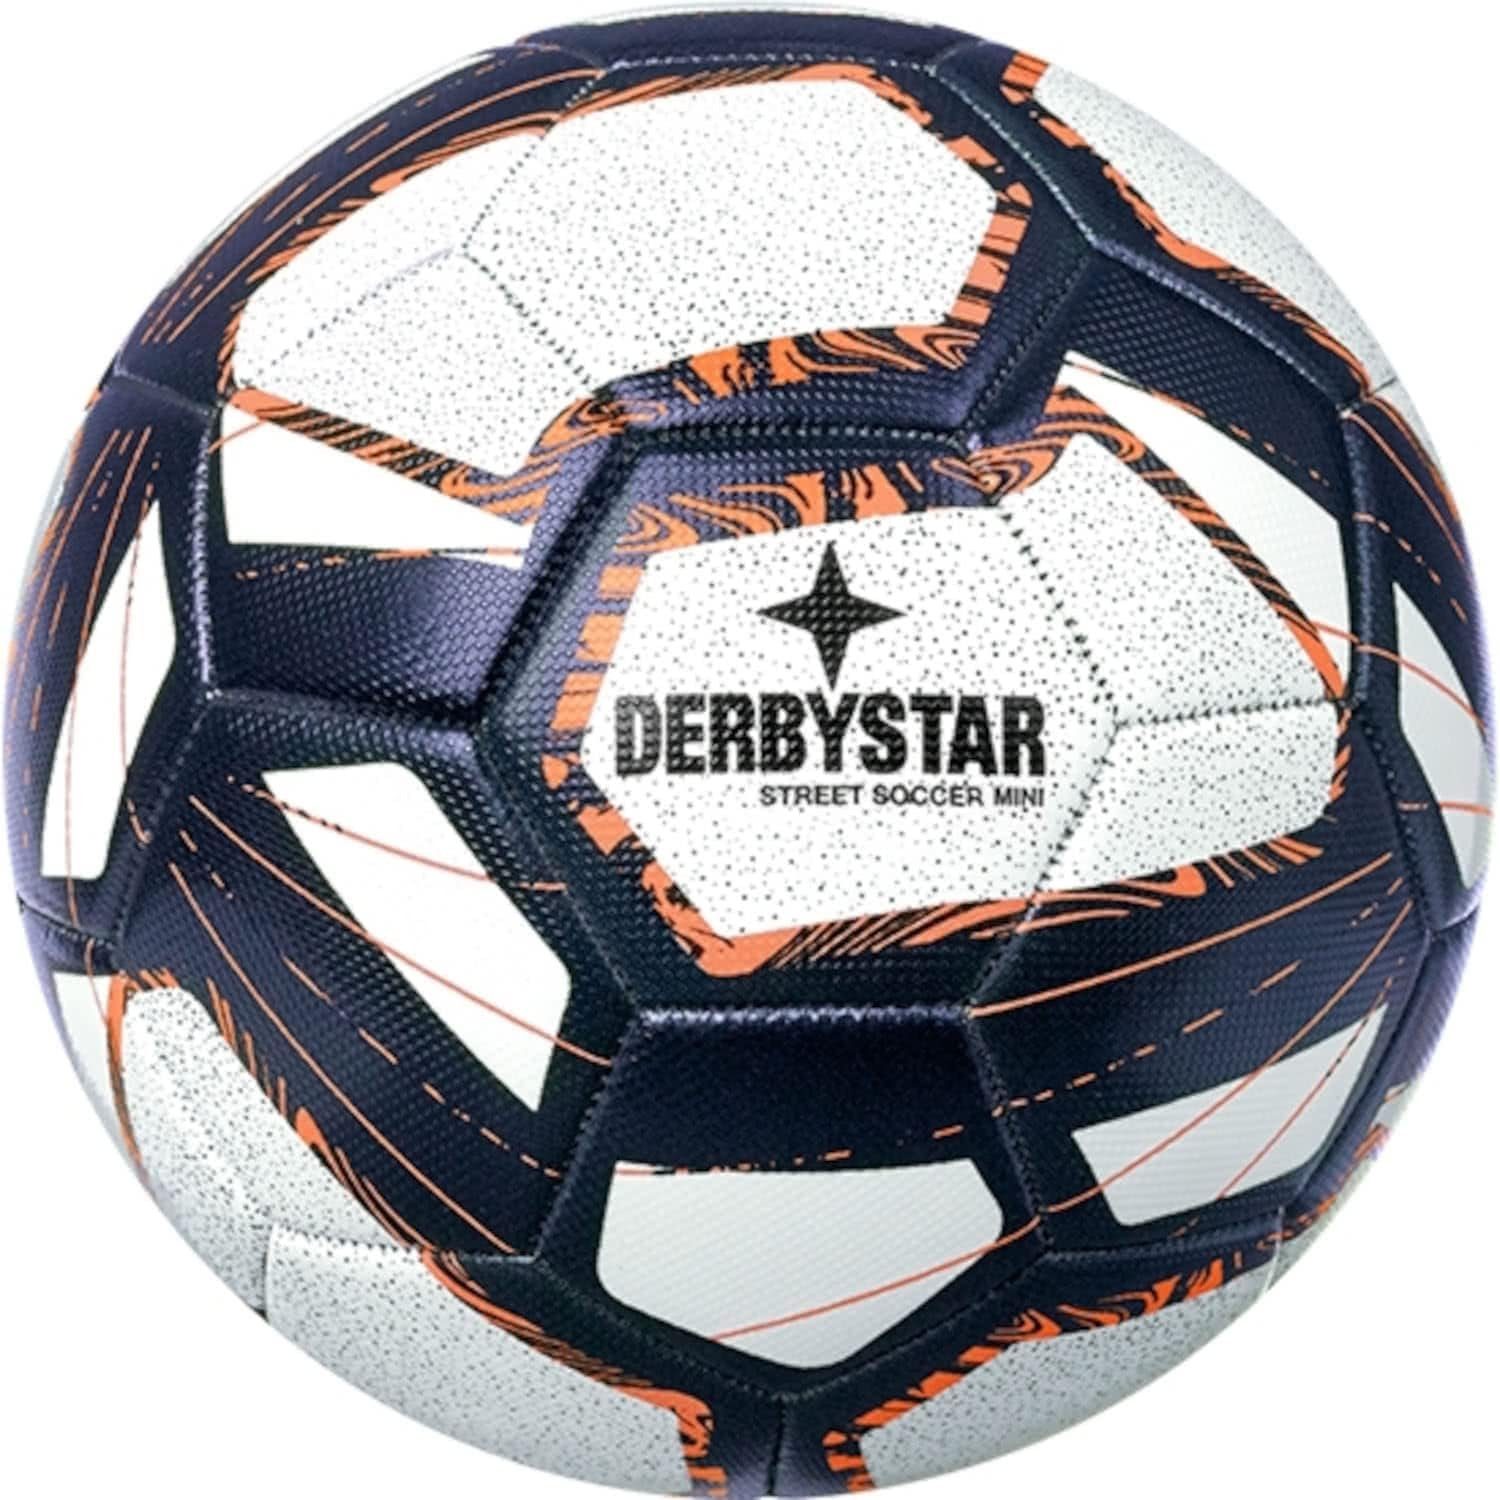 Derbystar Fußball Derbystar Miniball Street Soccer V22